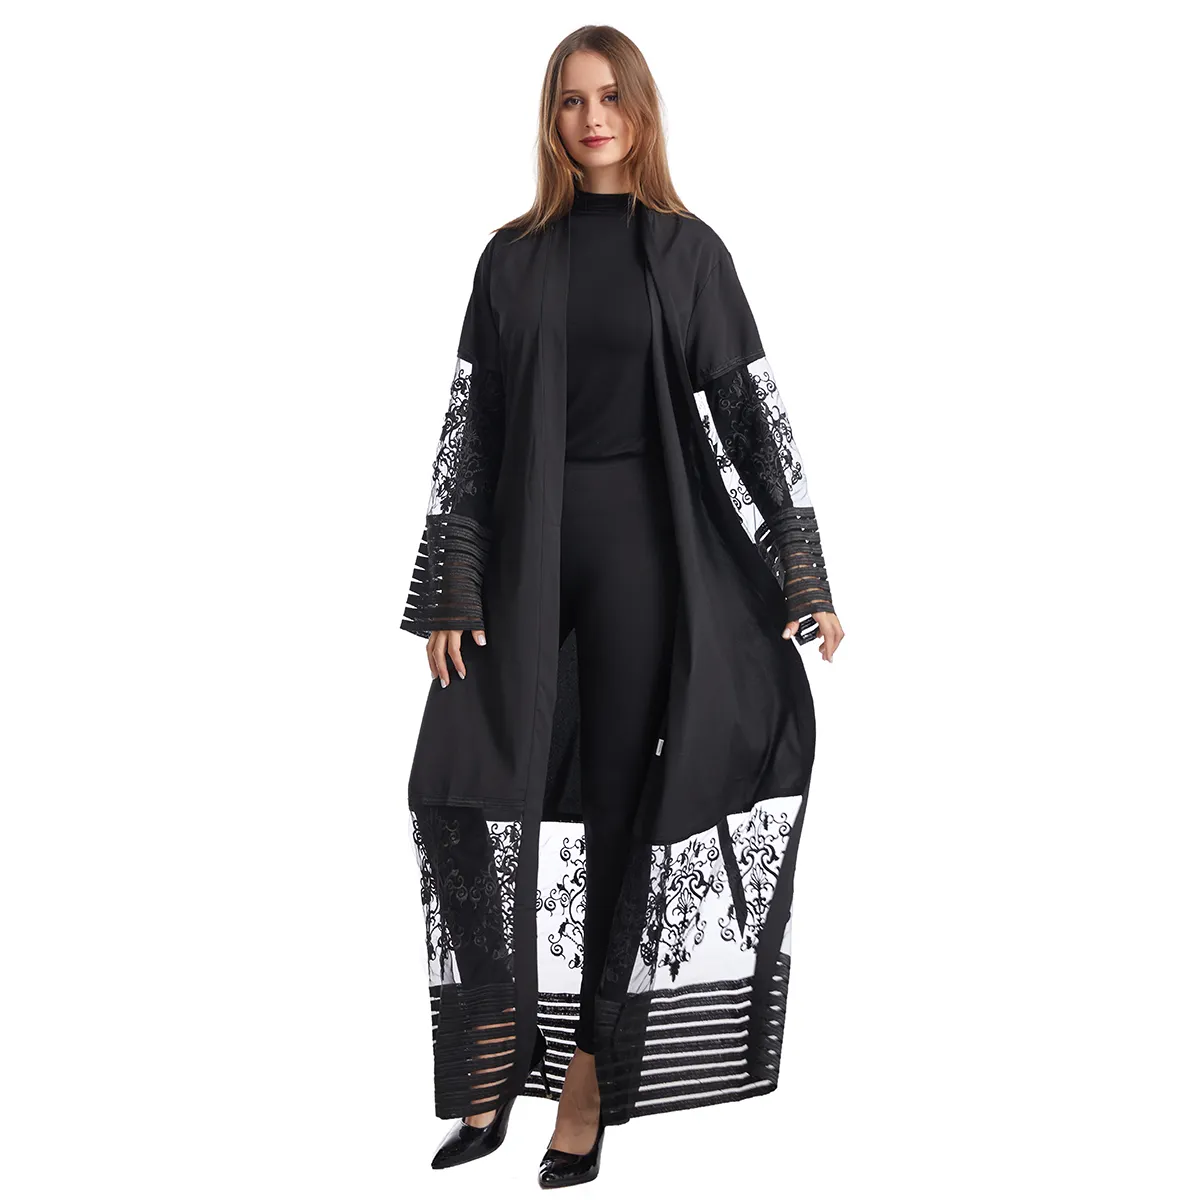 Buena venta de mujeres musulmanas de lujo Estambul moda oración turco Turki negro jilbab ropa abaya Dubai mujeres vestido musulmán